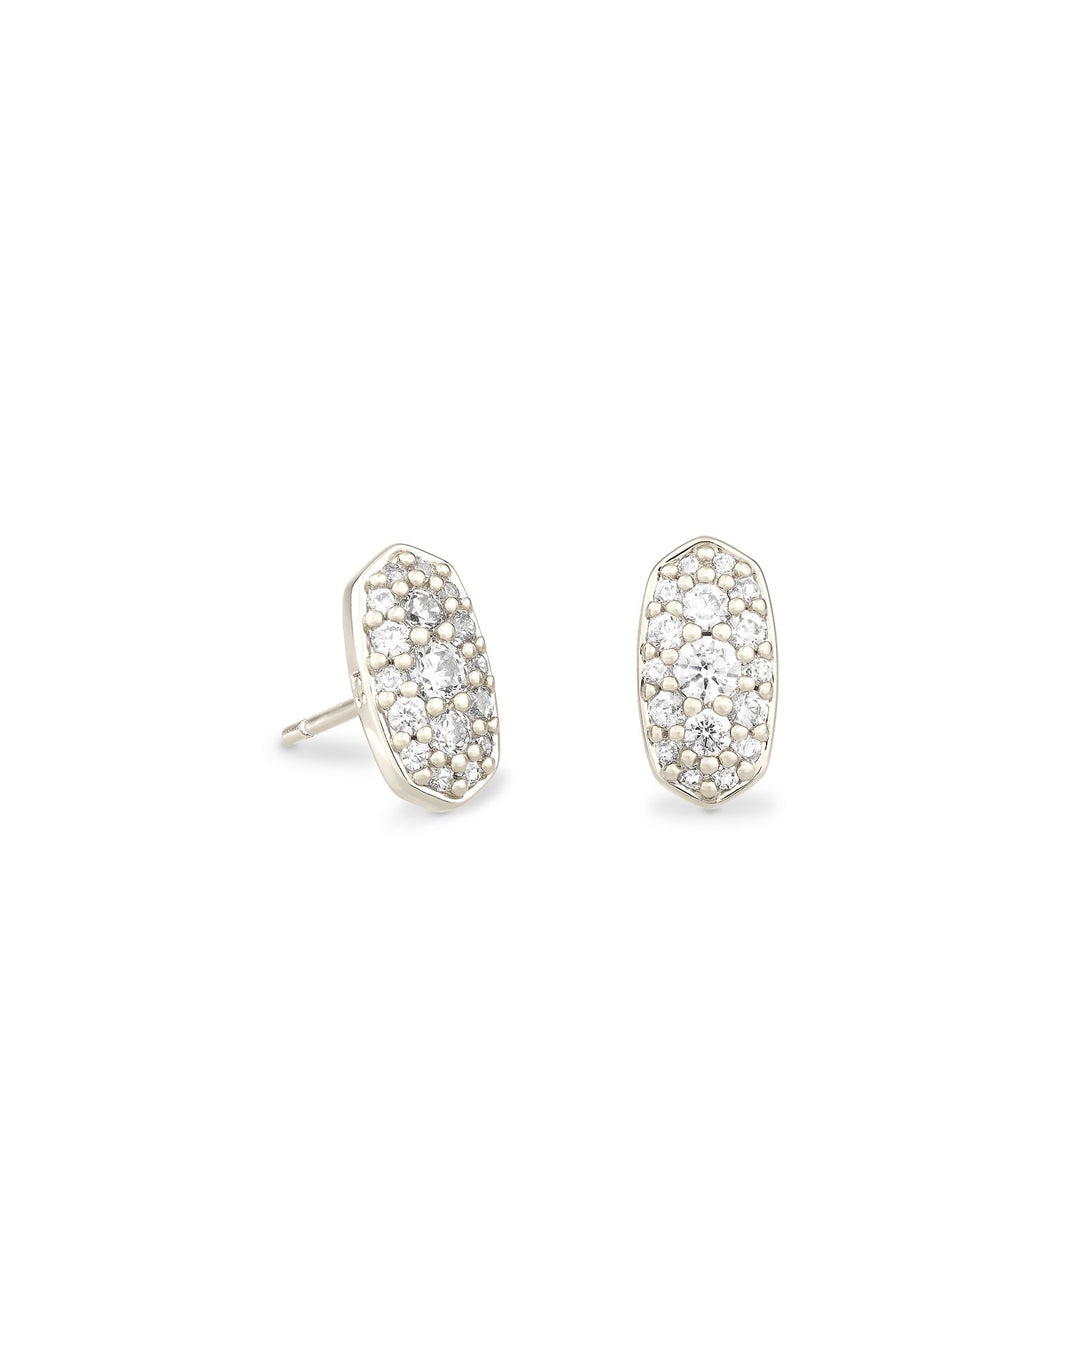 Kendra Scott Grayson Crystal Stud Earrings in Silver